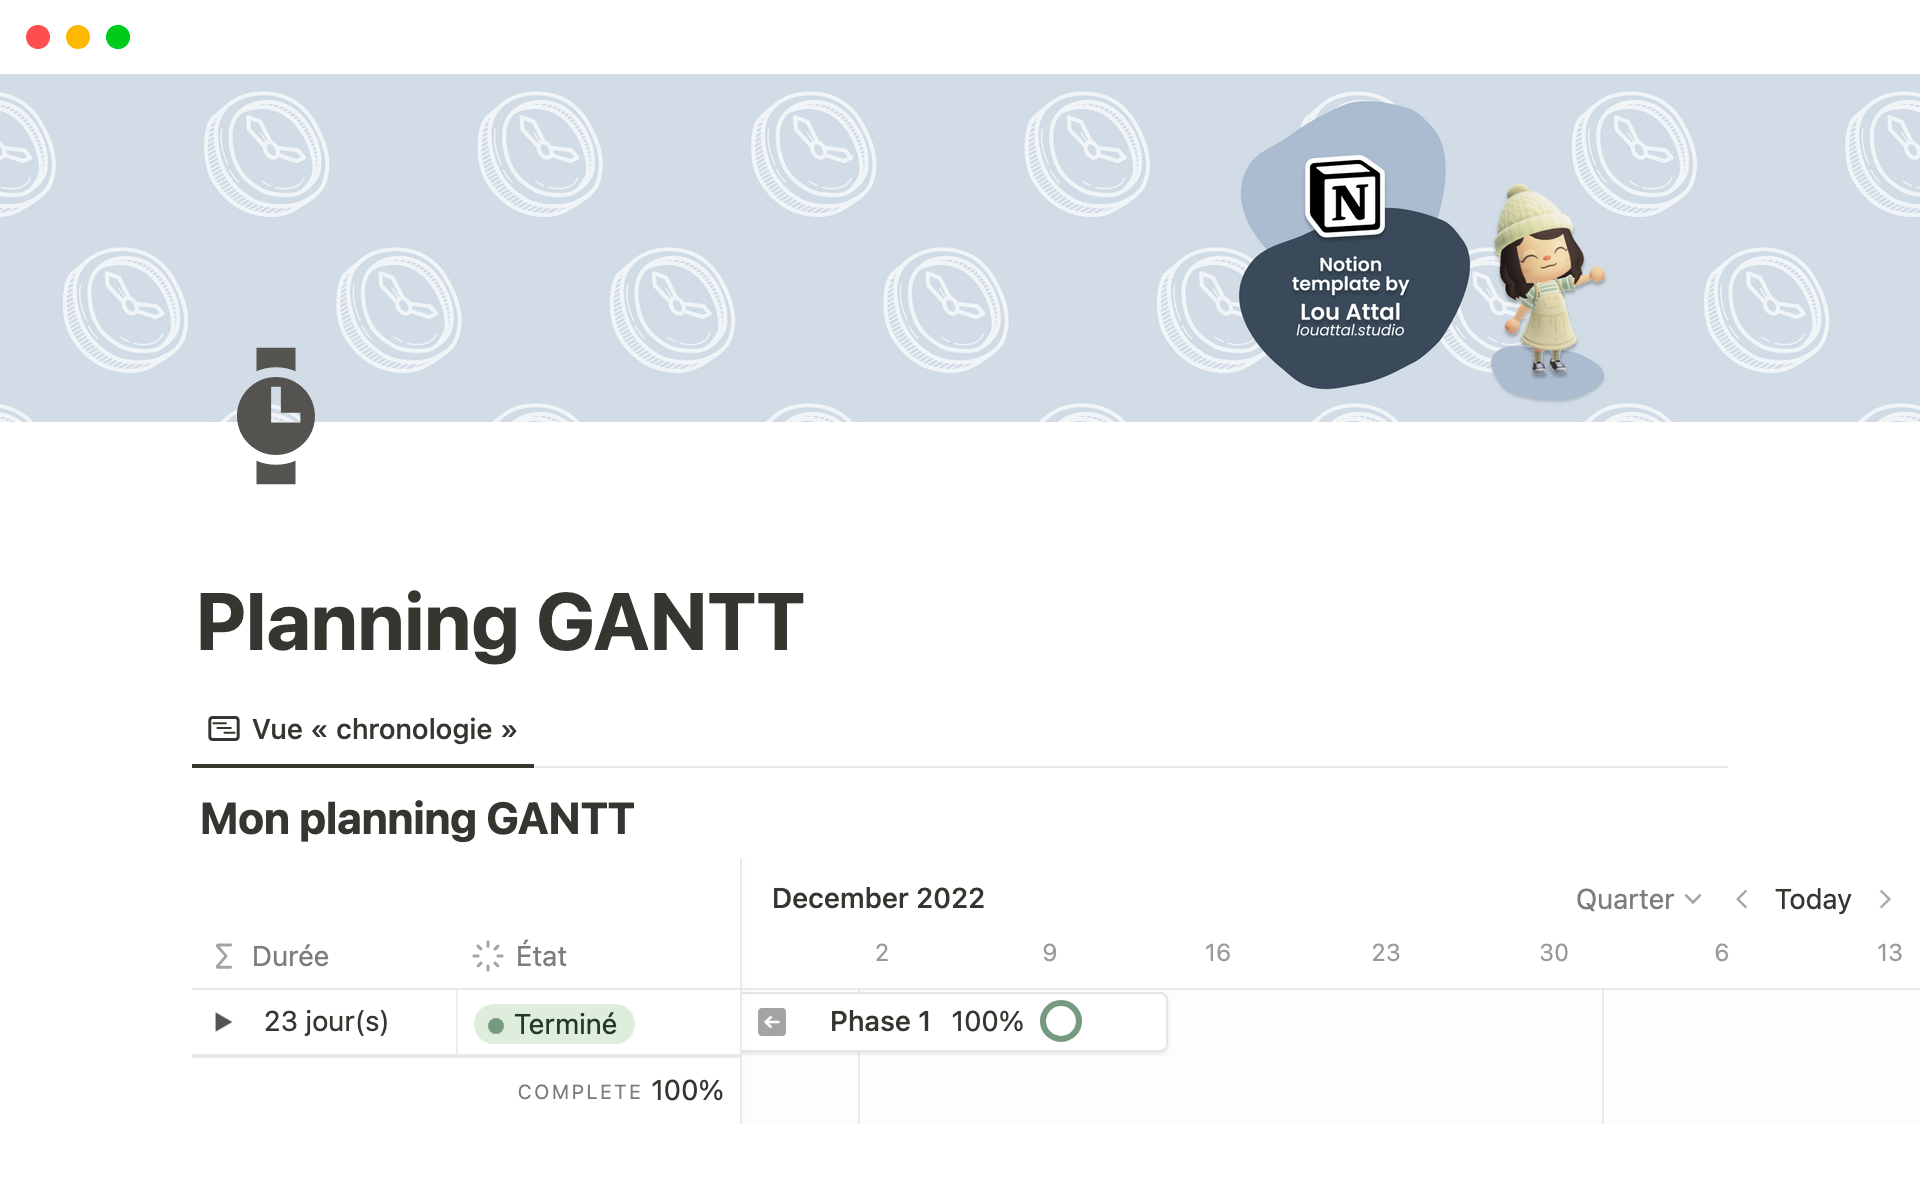 Créez des planning GANTT pour gérer des projets en affectant des ressources et en organisant des tâches et des phases avec des dépendances 💪